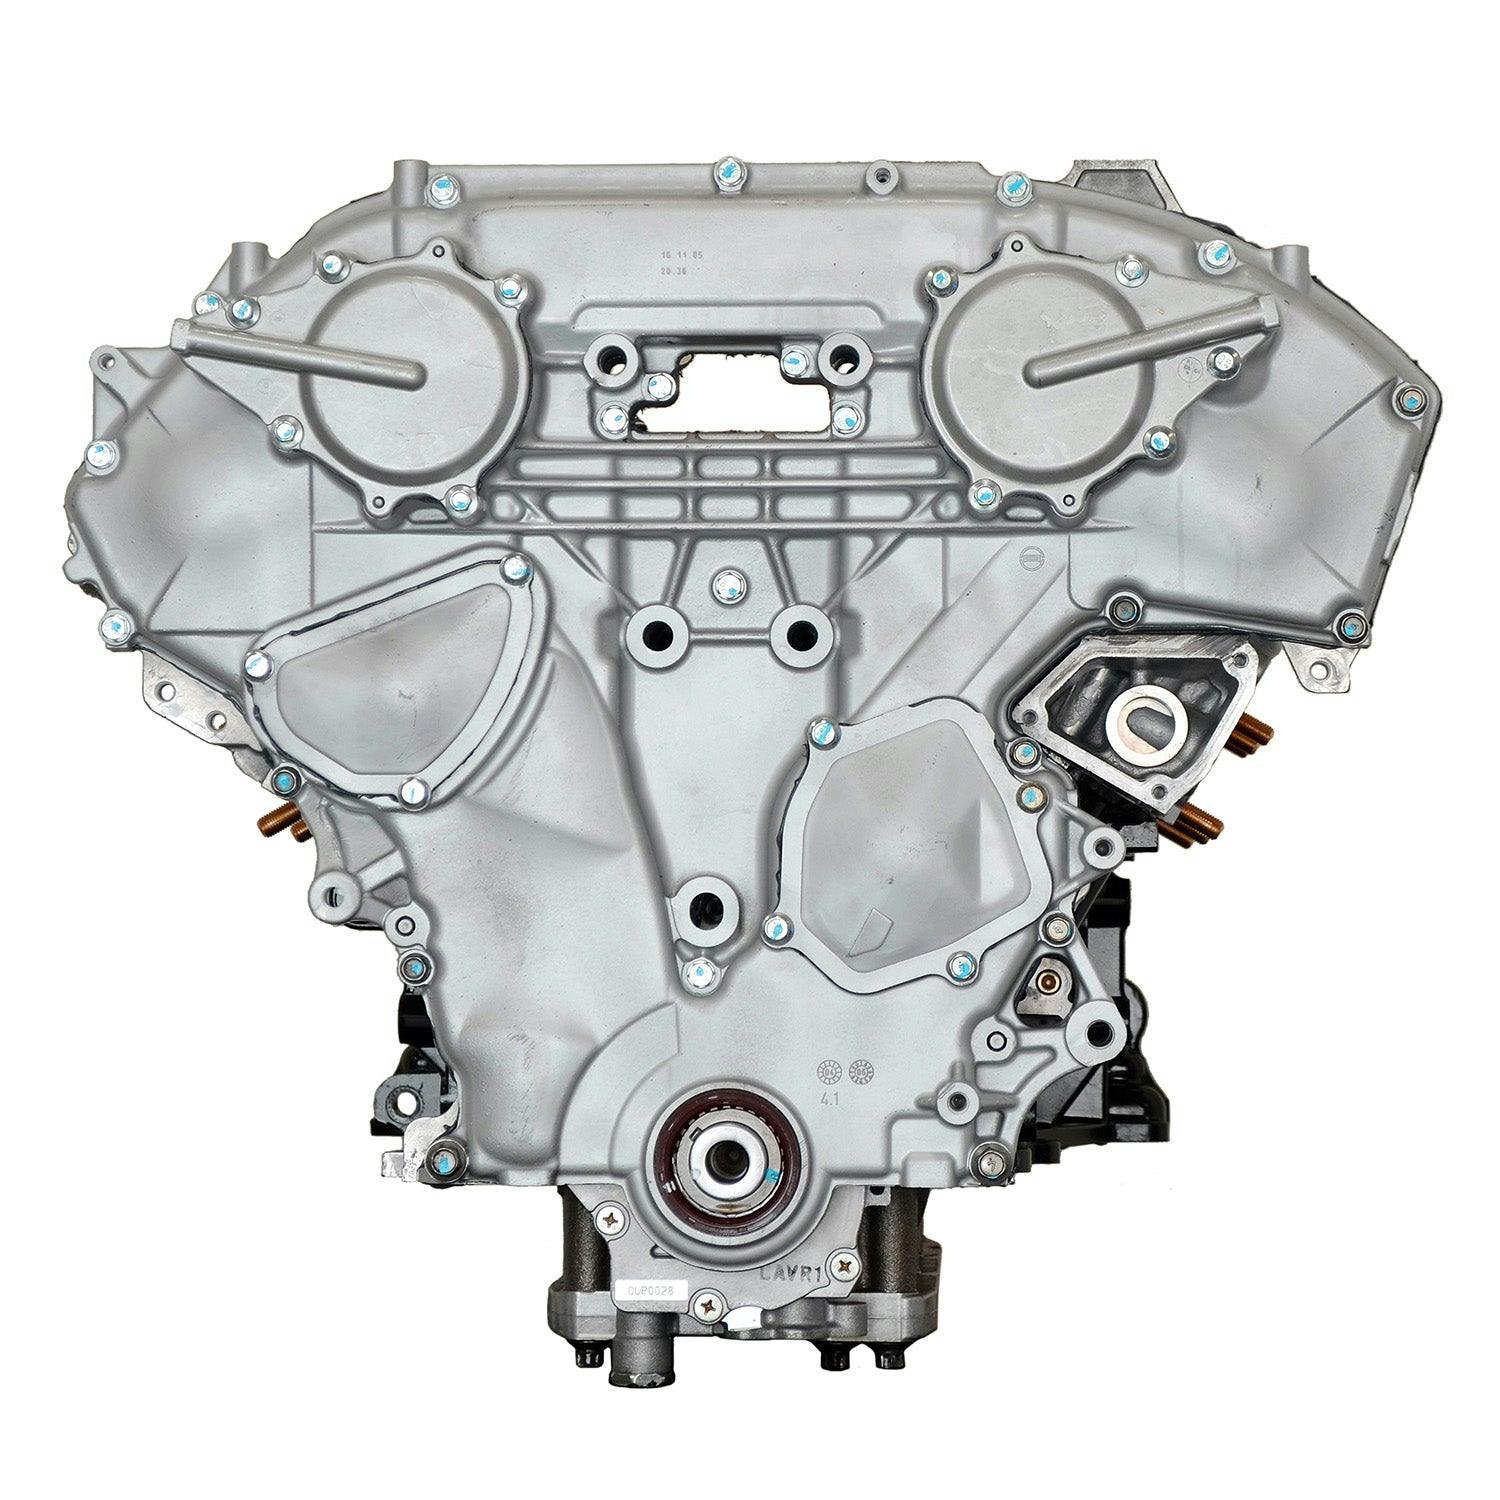 3.5L V6 Engine for 2002-2009 Infiniti I35/Nissan Altima, Maxima, Murano, Quest